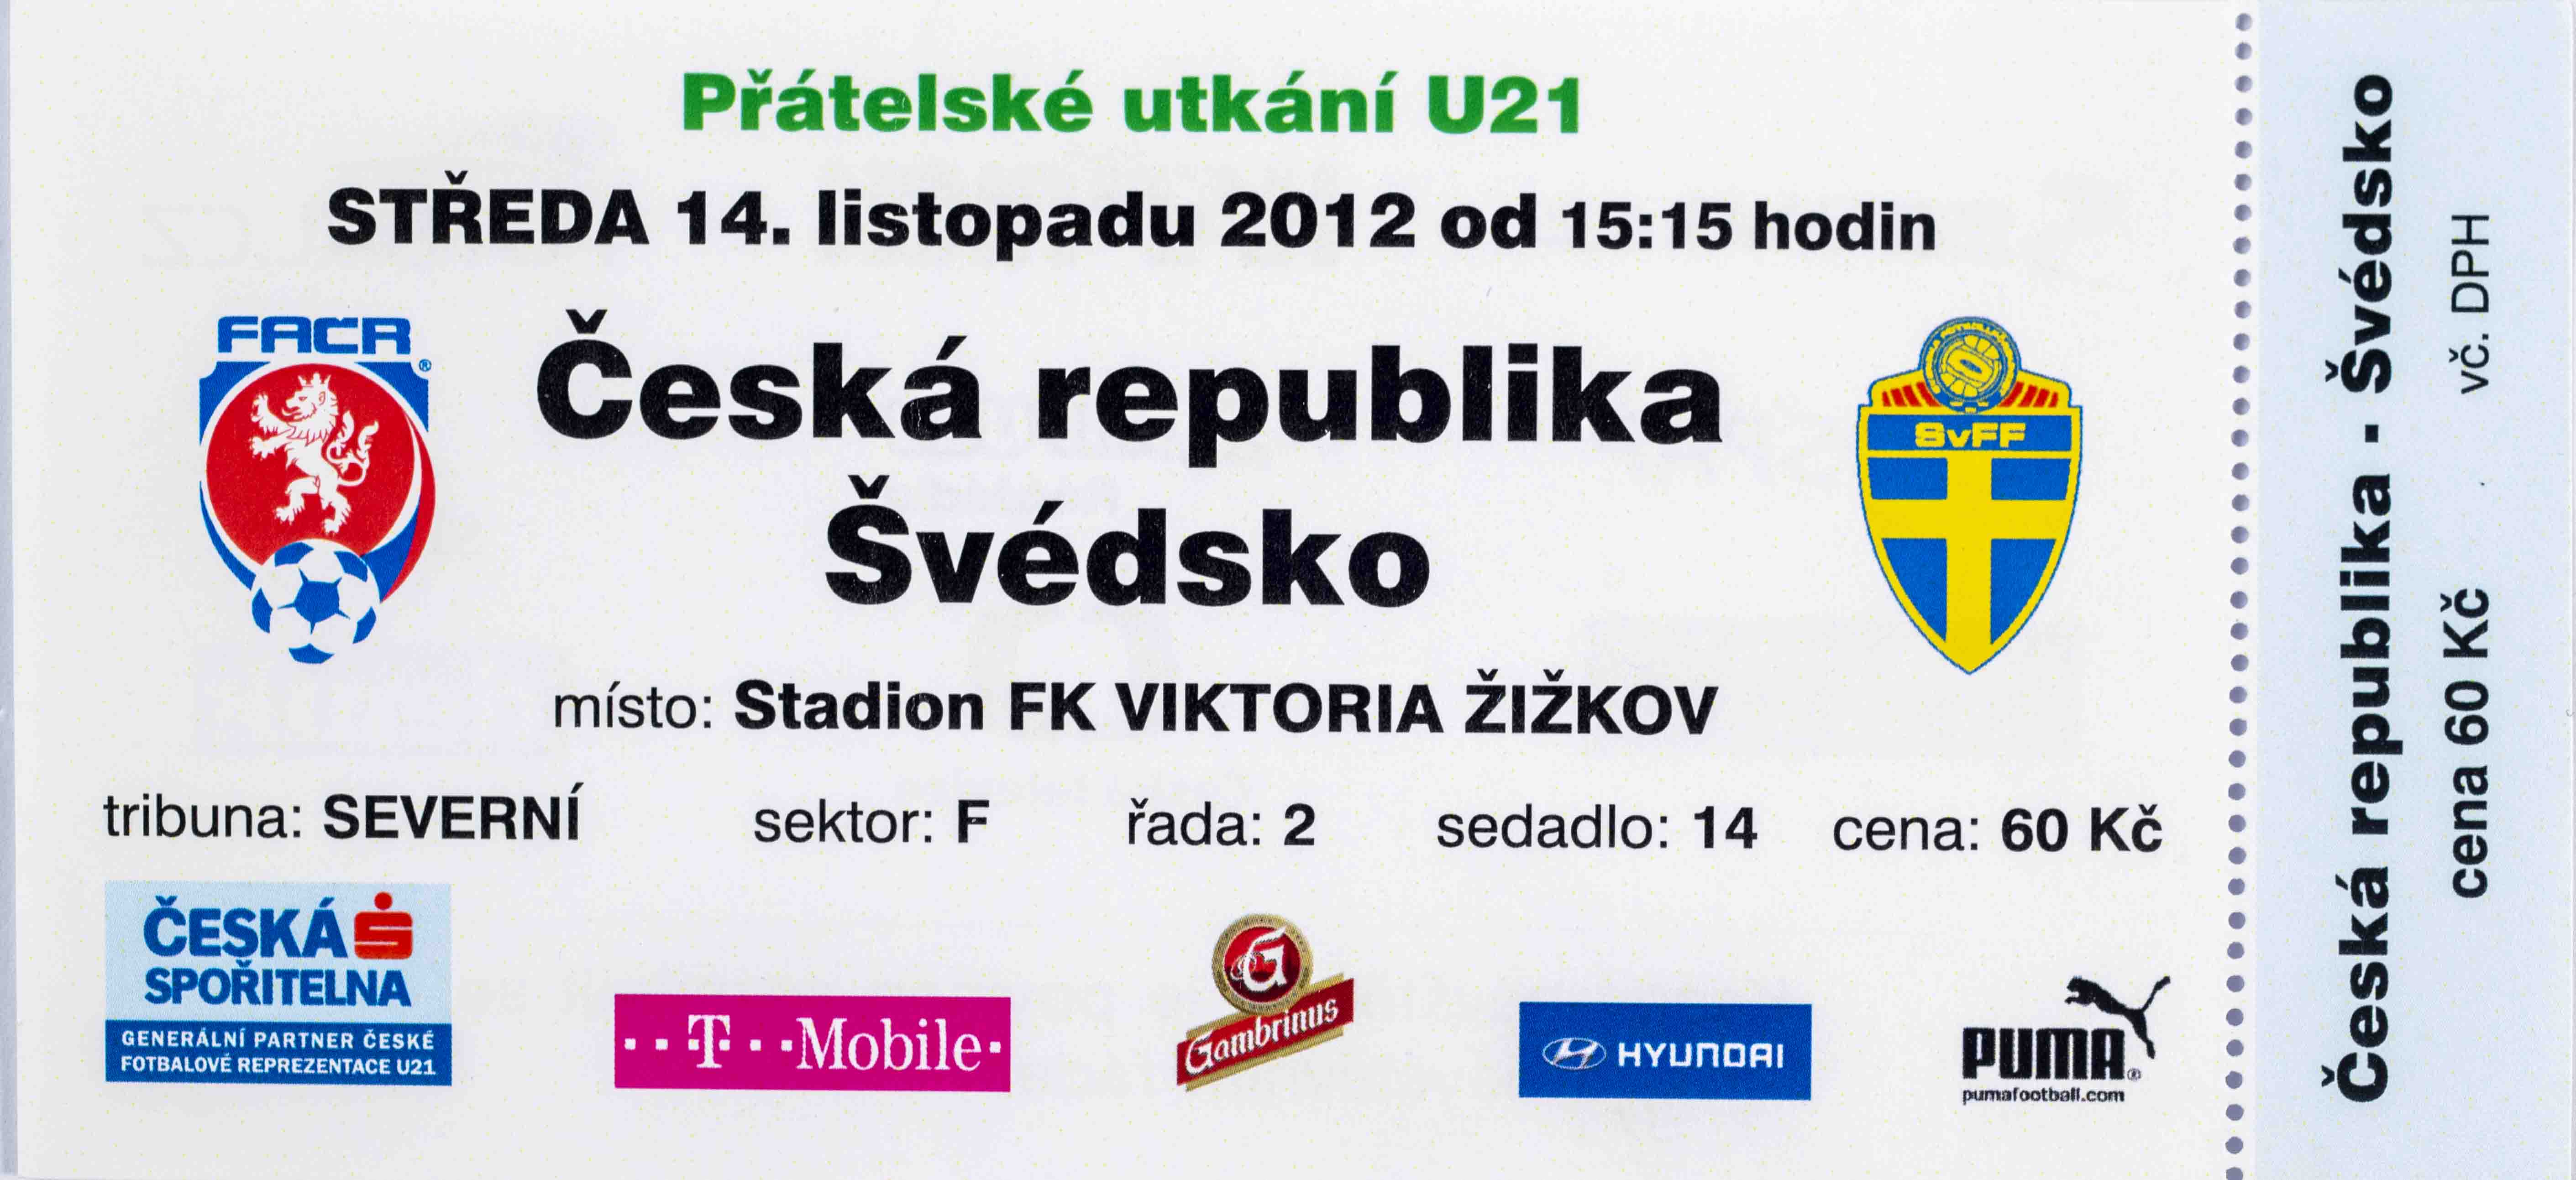 Vstupenka fotbal, U21, ČR v. Švédsko, 2012